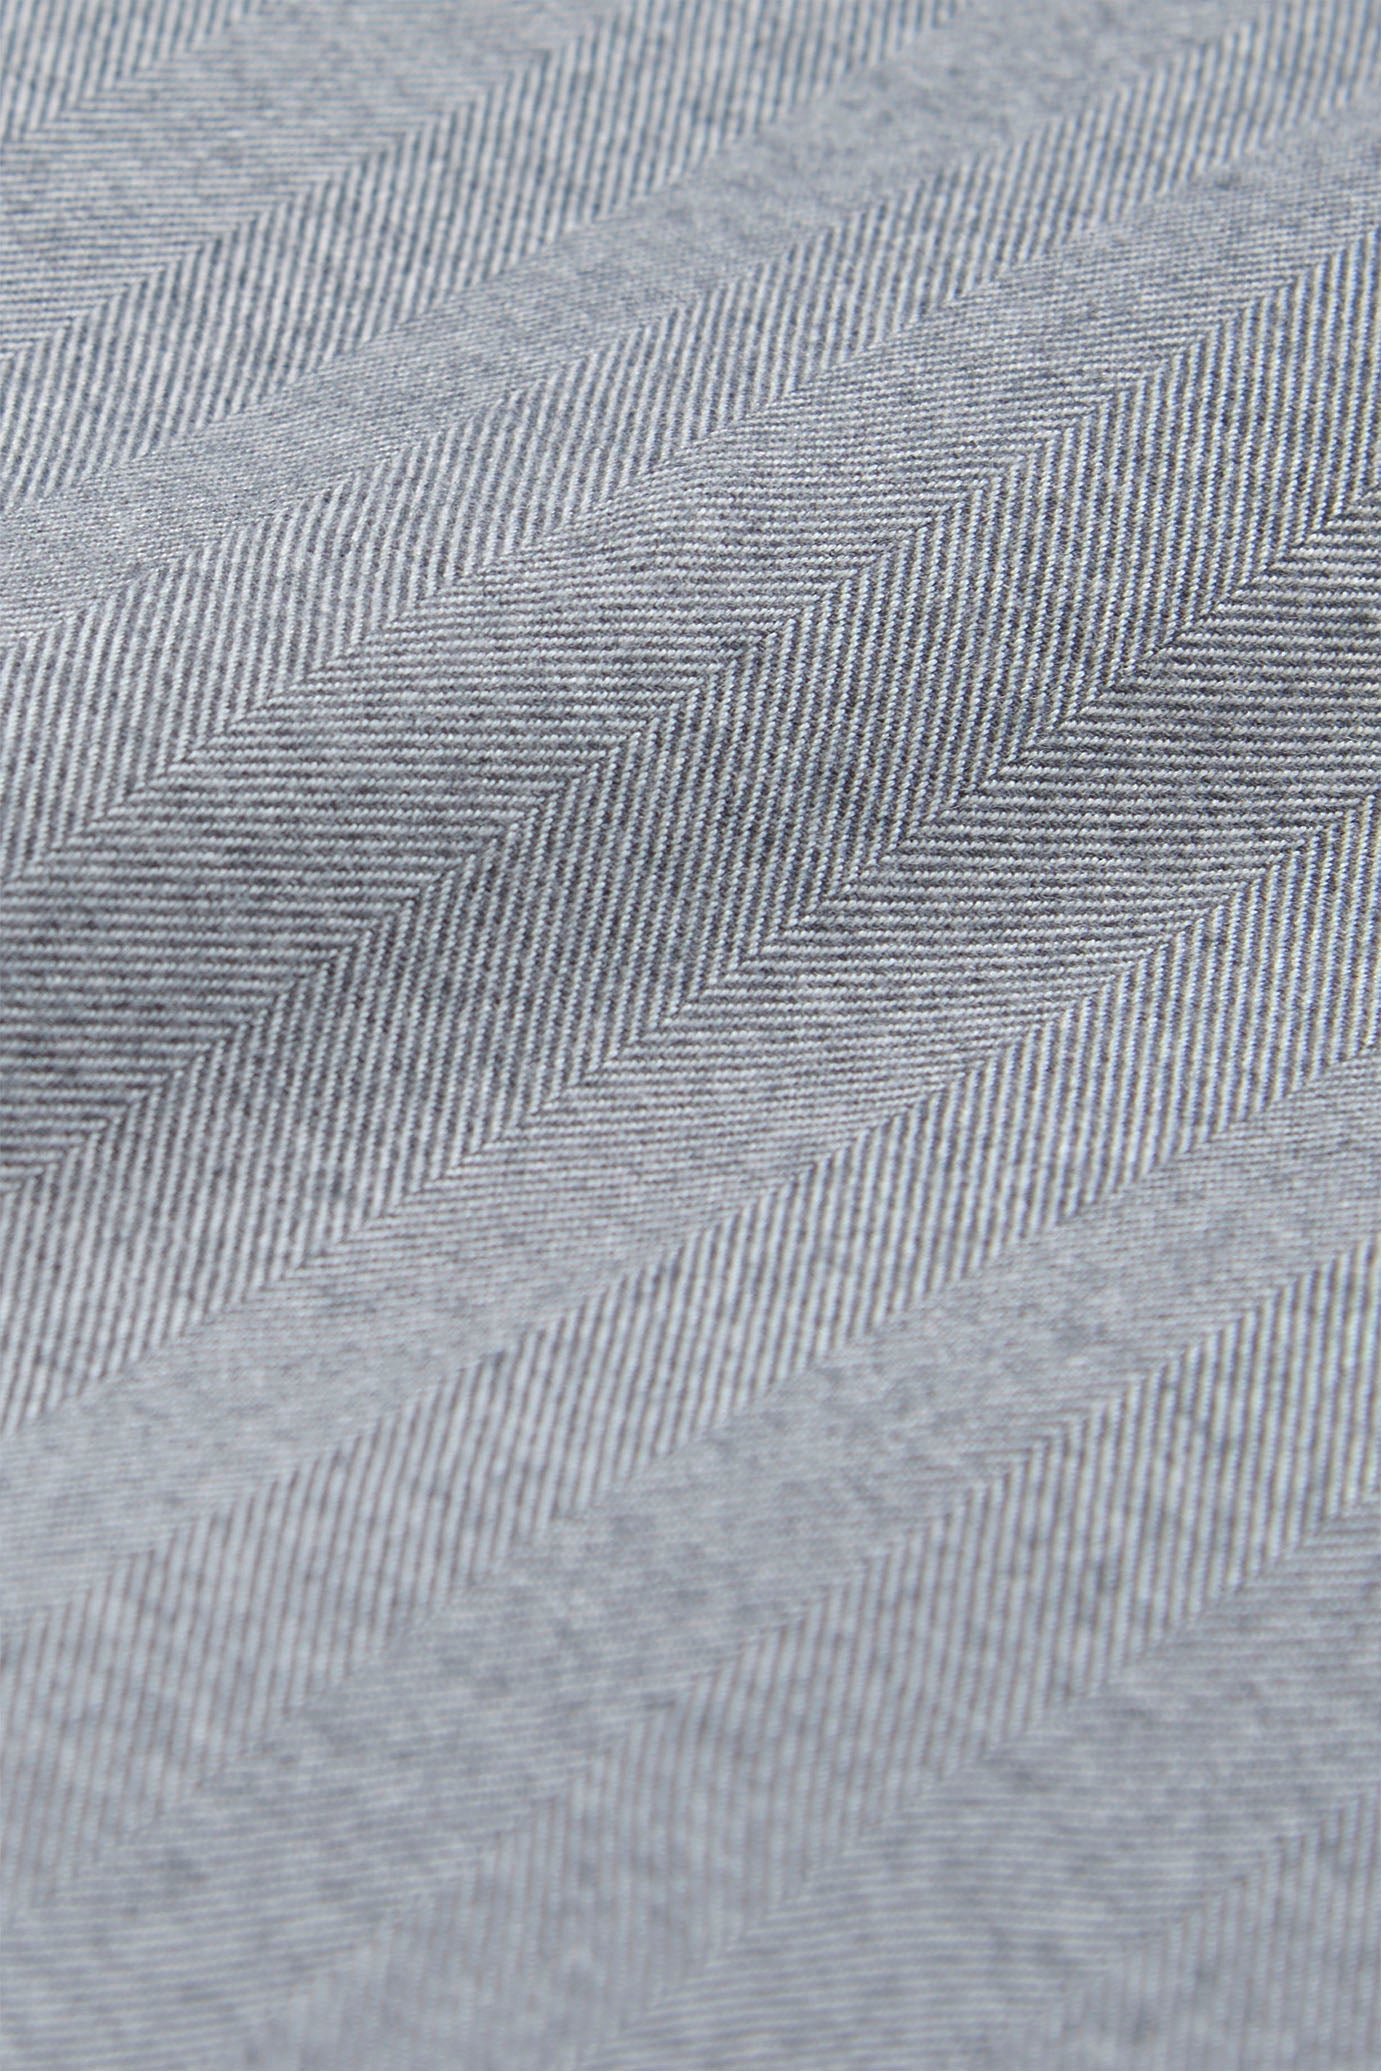 Fabric detail, La Boxer Alta in Grey Herringbone, cotton flannel, Comme Si